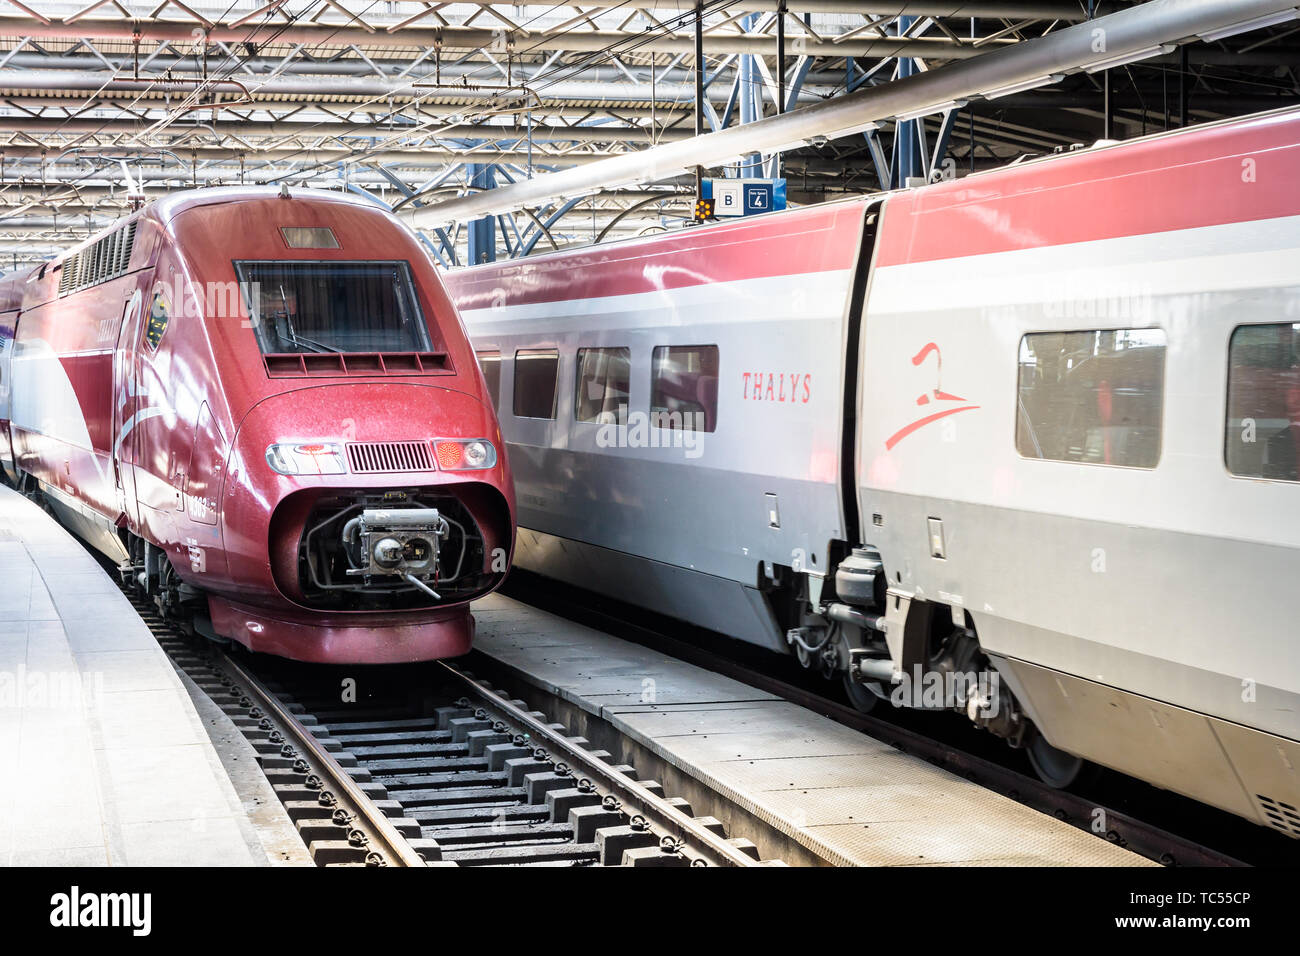 Un train à grande vitesse Thalys est installation dans la gare Bruxelles- Midi alors qu'une autre est de quitter la station Photo Stock - Alamy